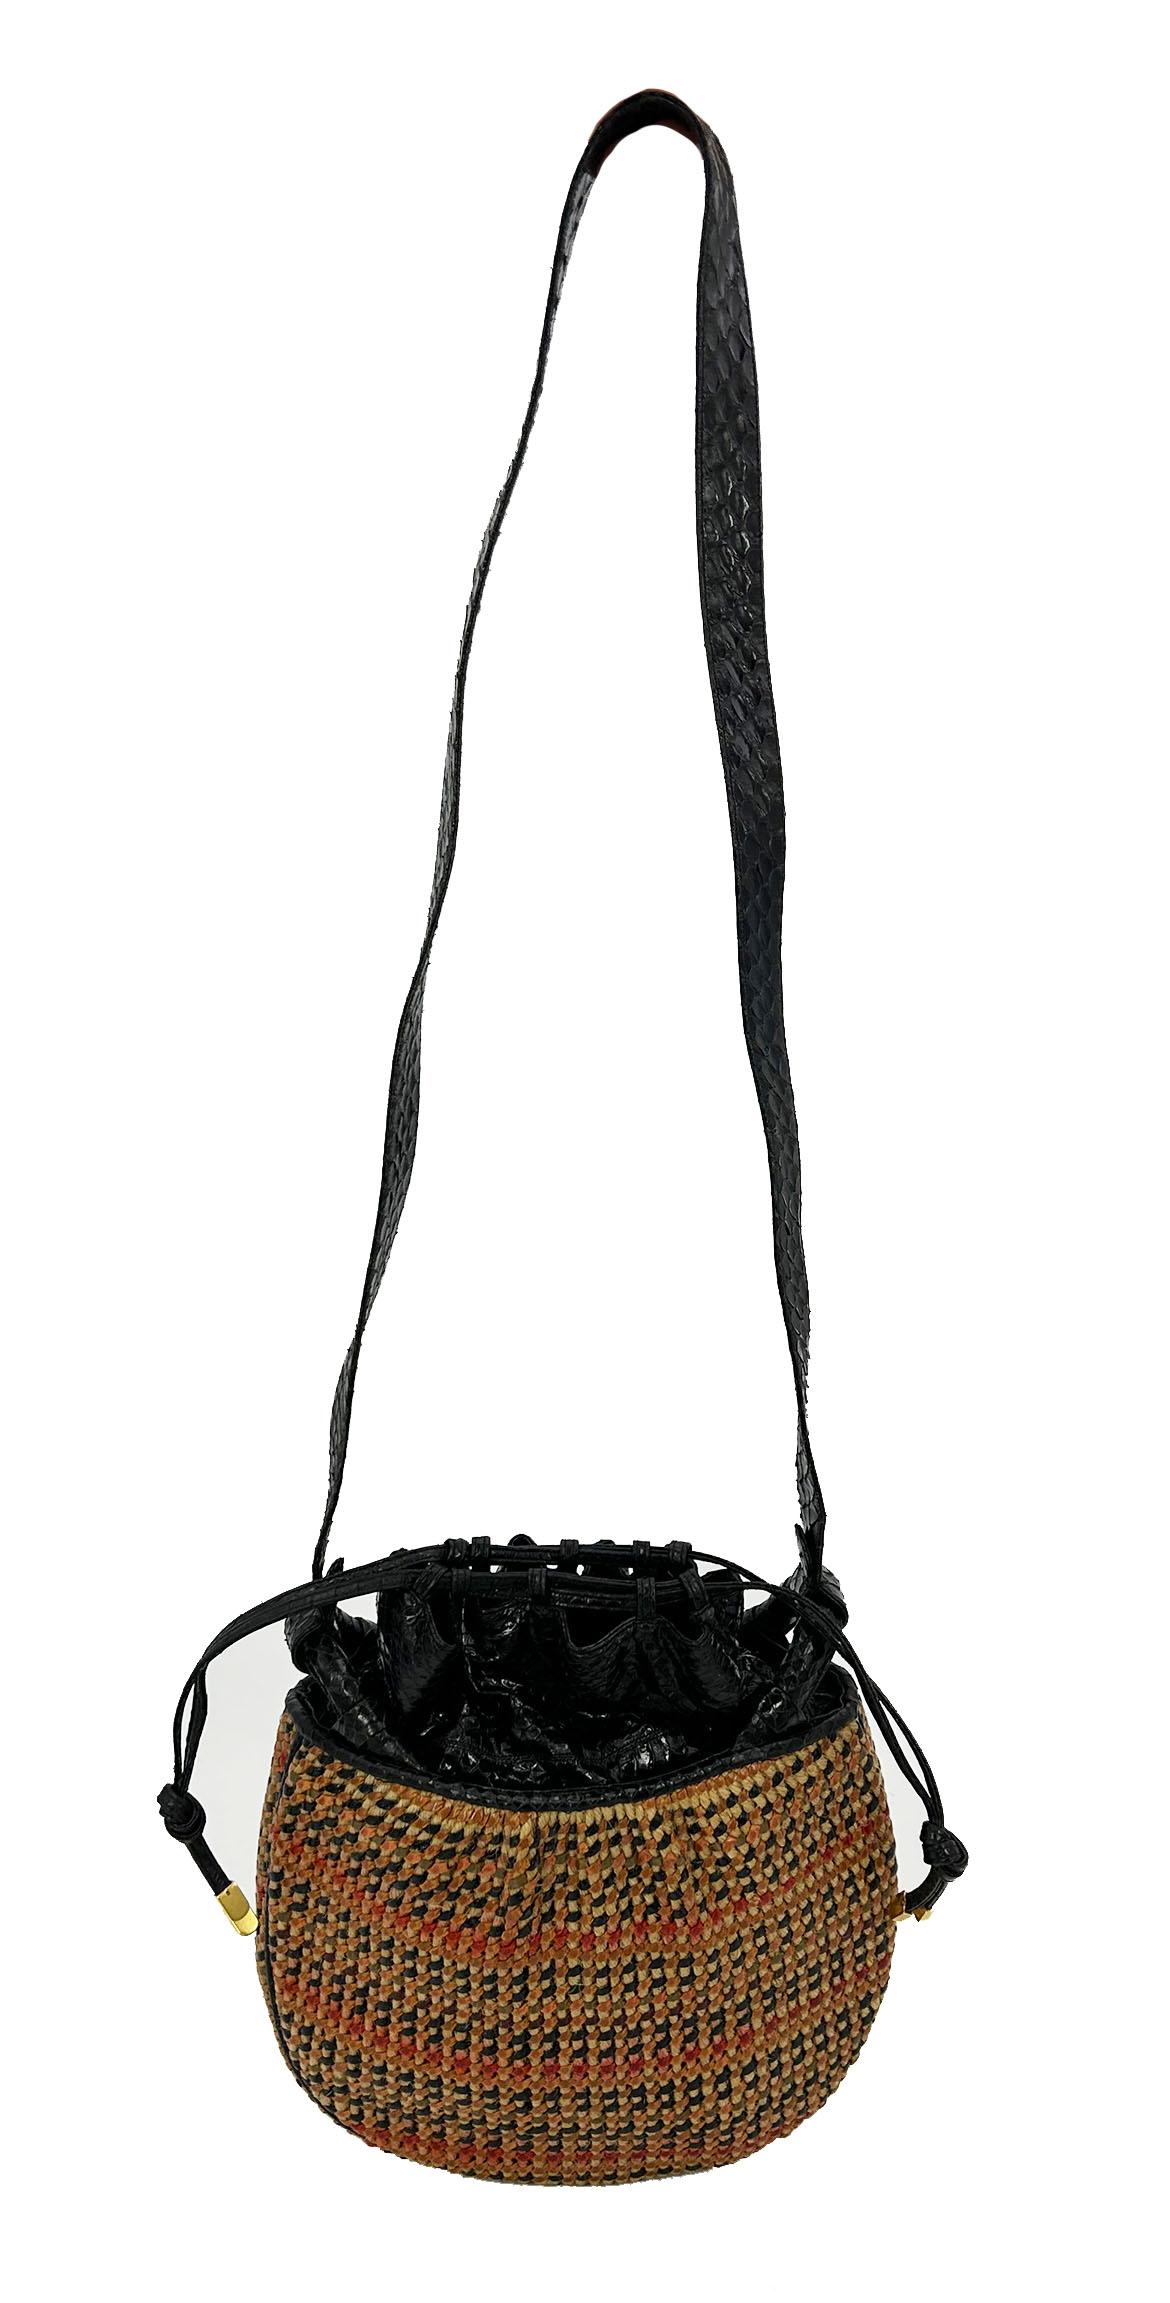 Judith Leiber Vintage Basket Weave Snakeskin Drawstring Shoulder Bag en excellent état. Rotin tressé tan avec cuir noir, rouge, tan et vert sur l'ensemble du corps. Garniture en cuir de serpent noir sur les bords, le dessus et la bandoulière. Deux